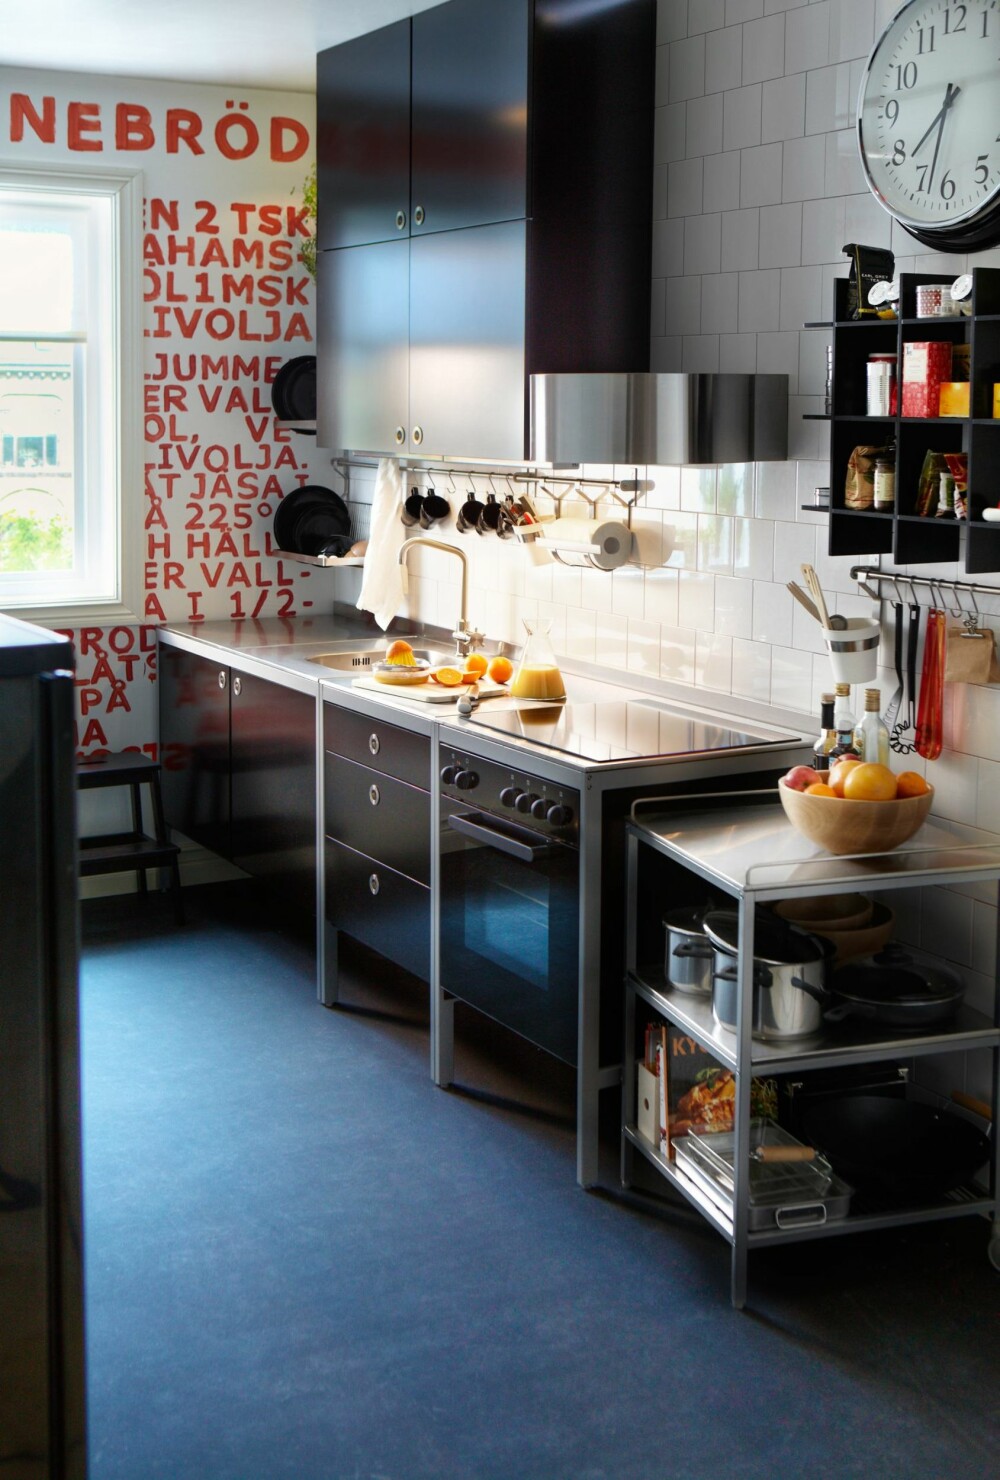 UNGT OG URBANT: Har du liten plass, er Udden kjøkken genialt. Det setter i tillegg et urbant preg på rommet. Kr 6230, eks. belysning og hvitevarer, Ikea.